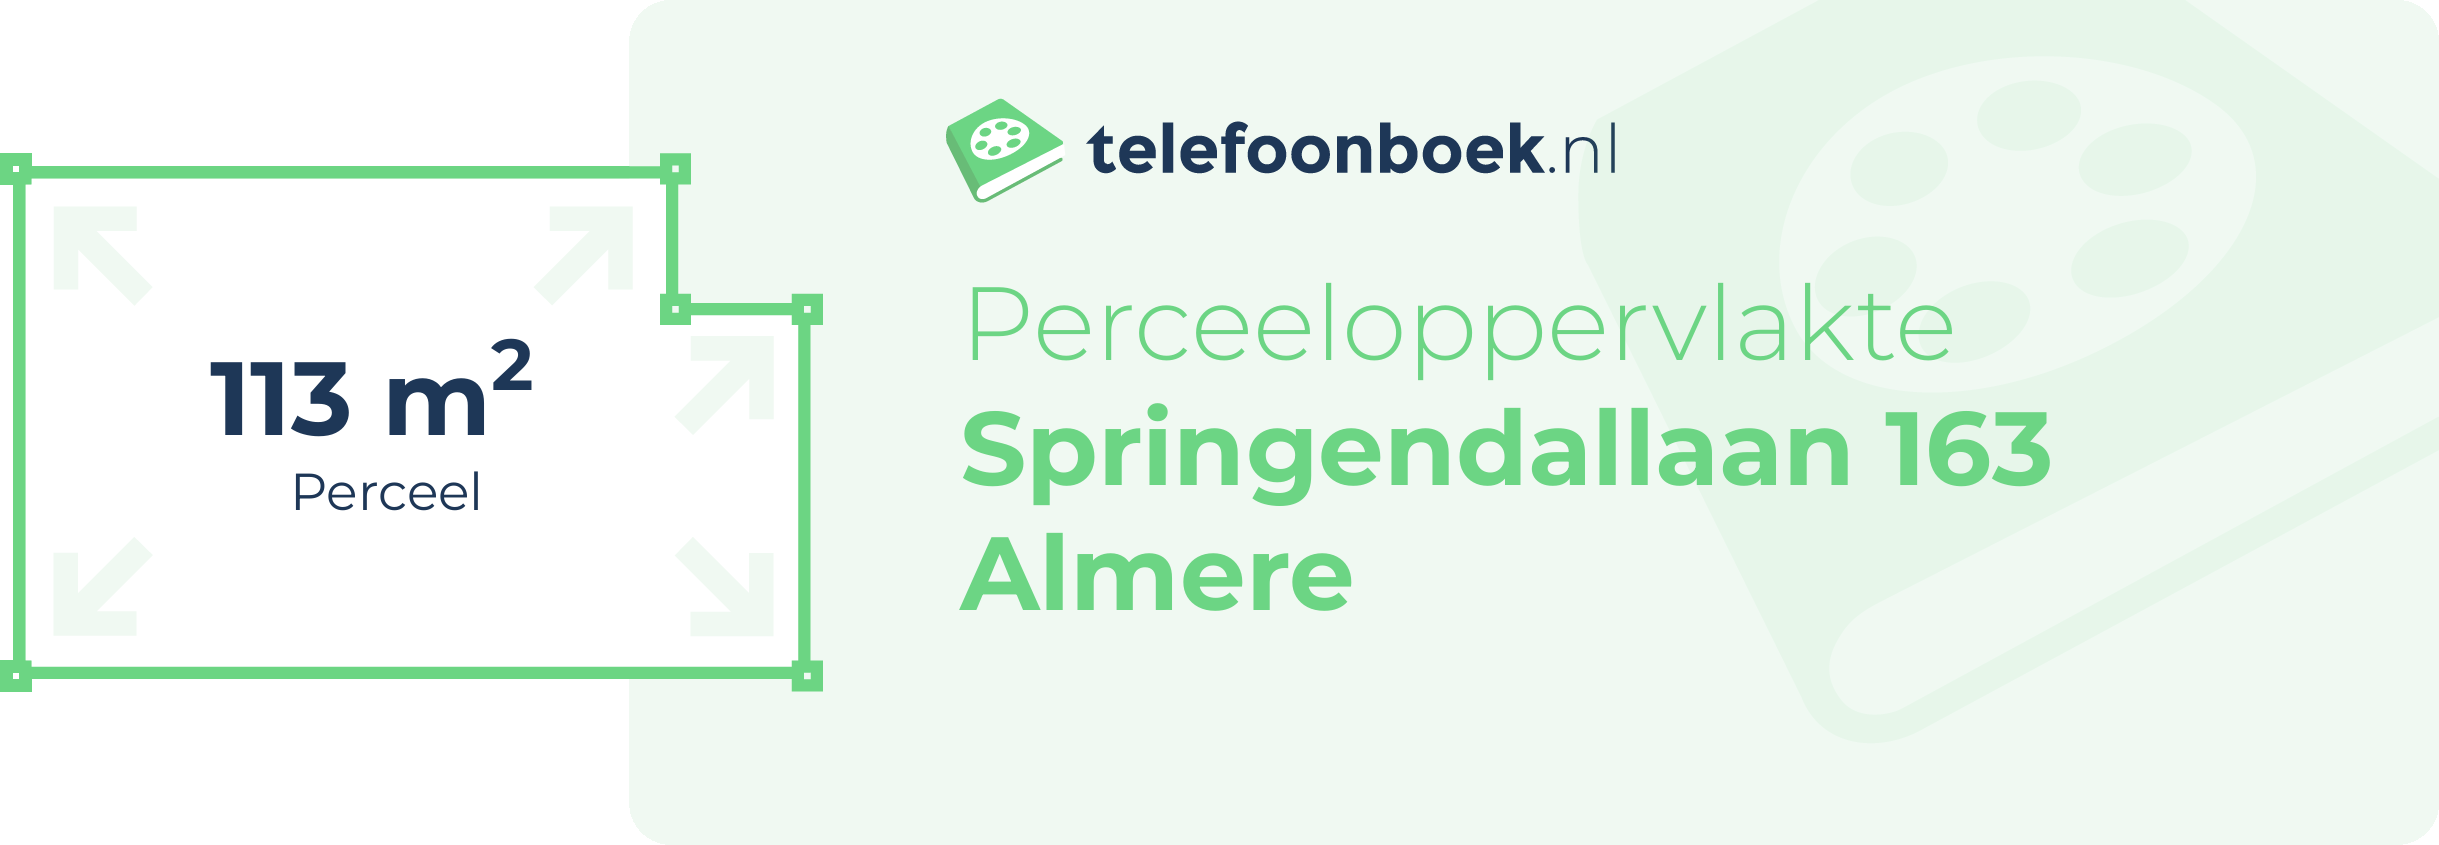 Perceeloppervlakte Springendallaan 163 Almere